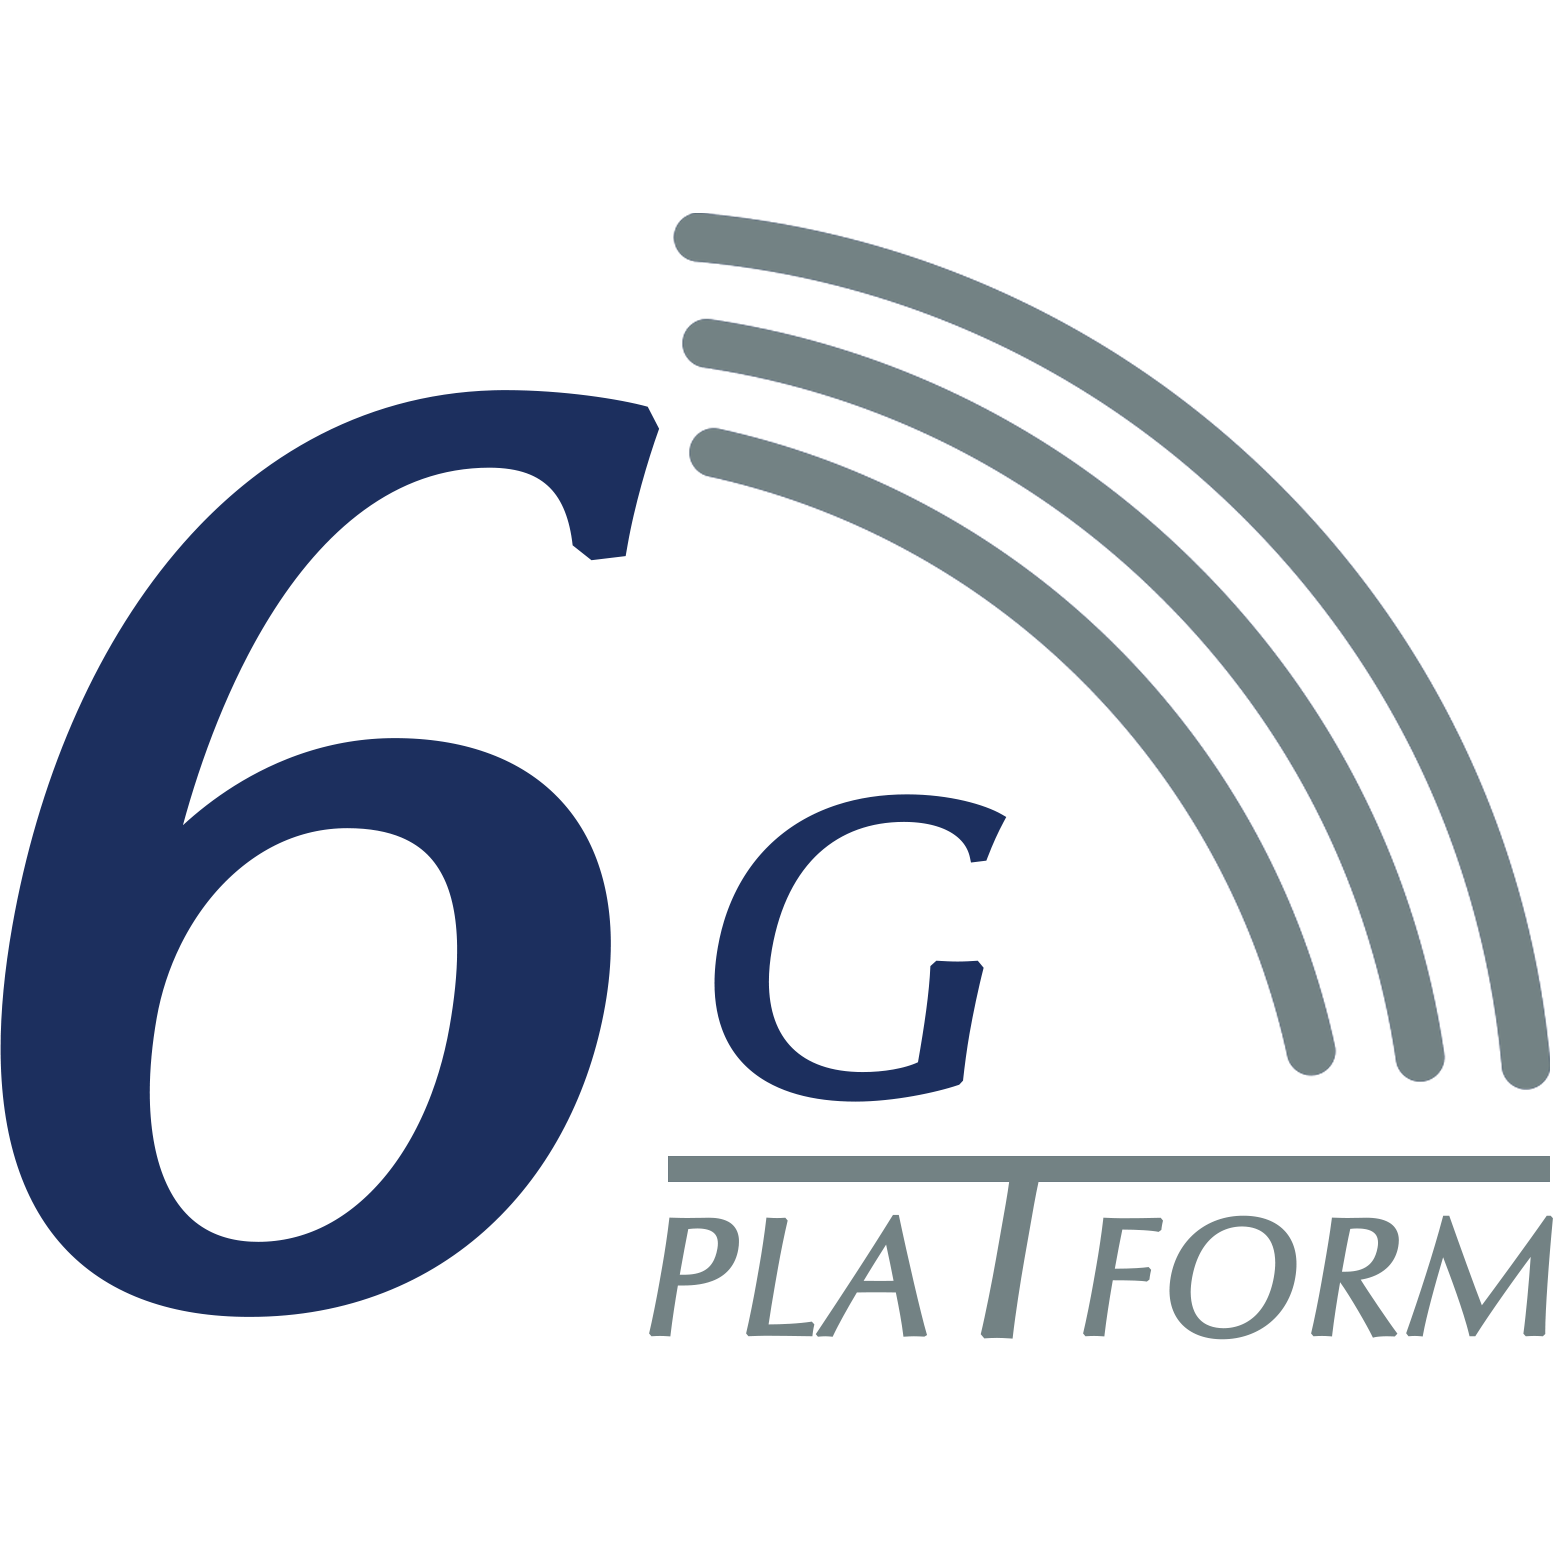 6G Platform